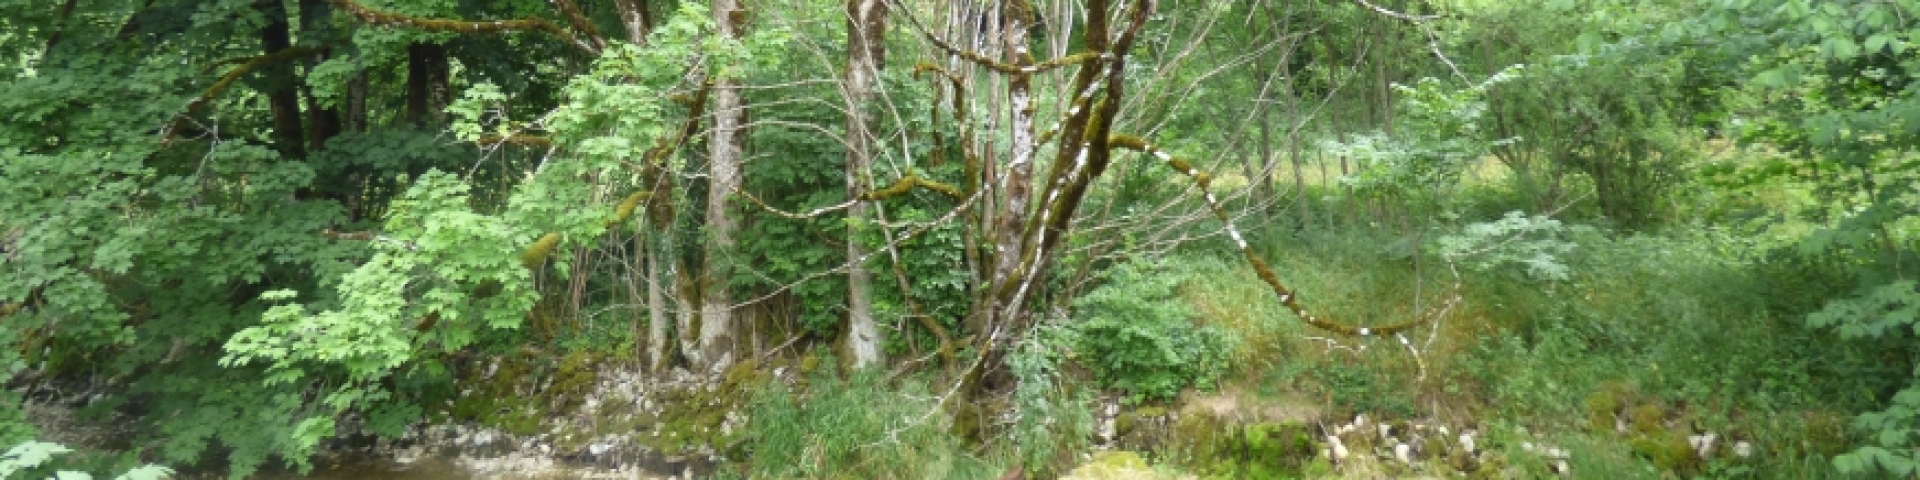 Entretien arbres - Val-de-Travers